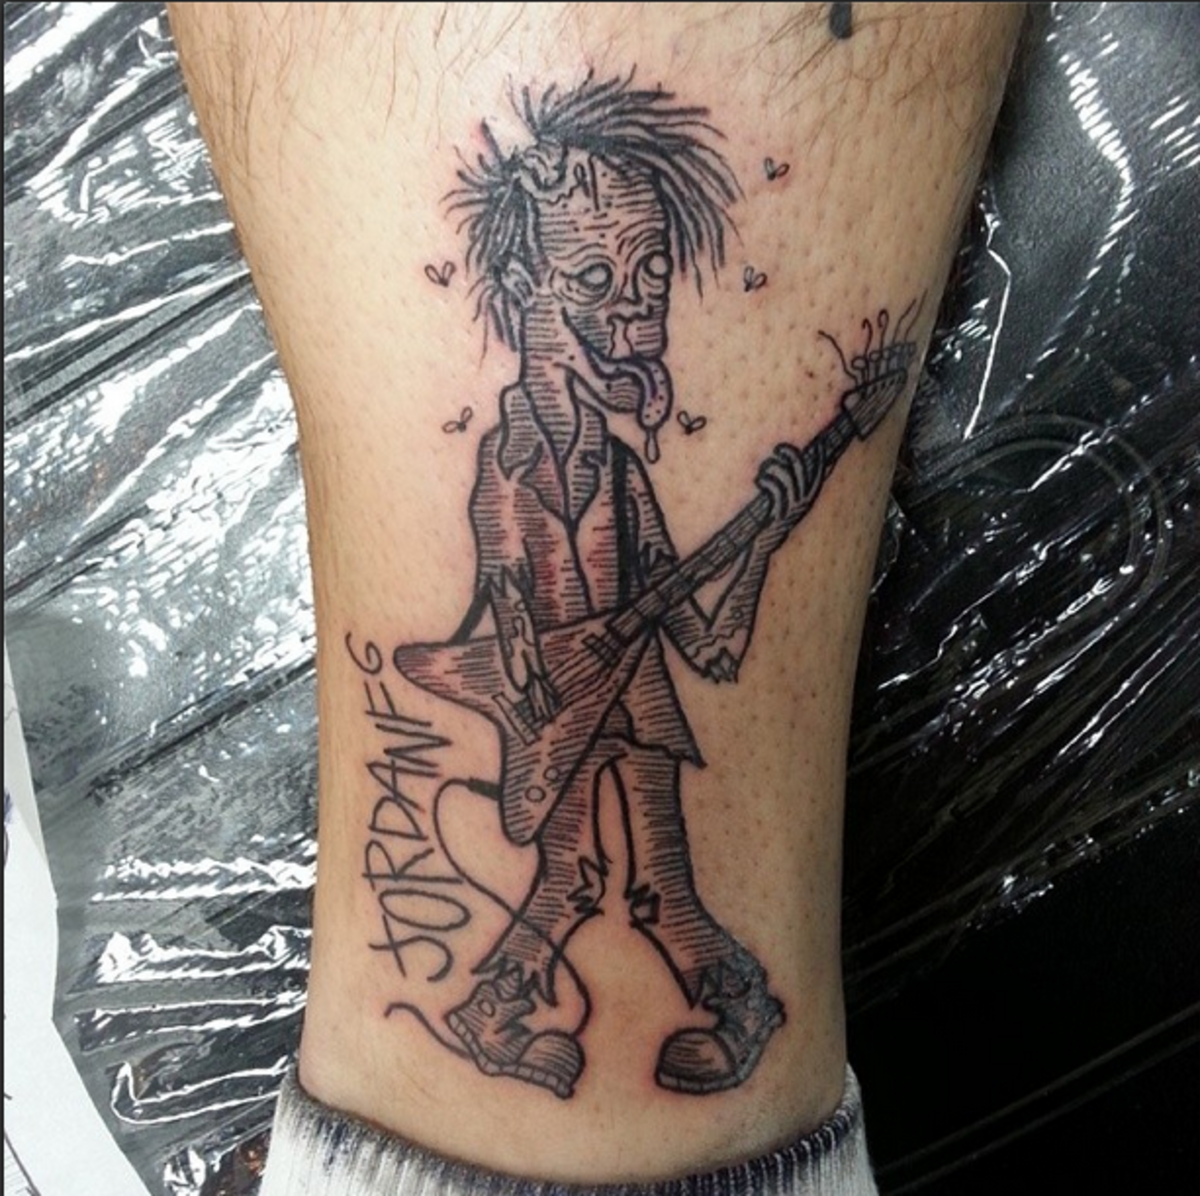 Tetování Jordan Pundik s jeho podpisem